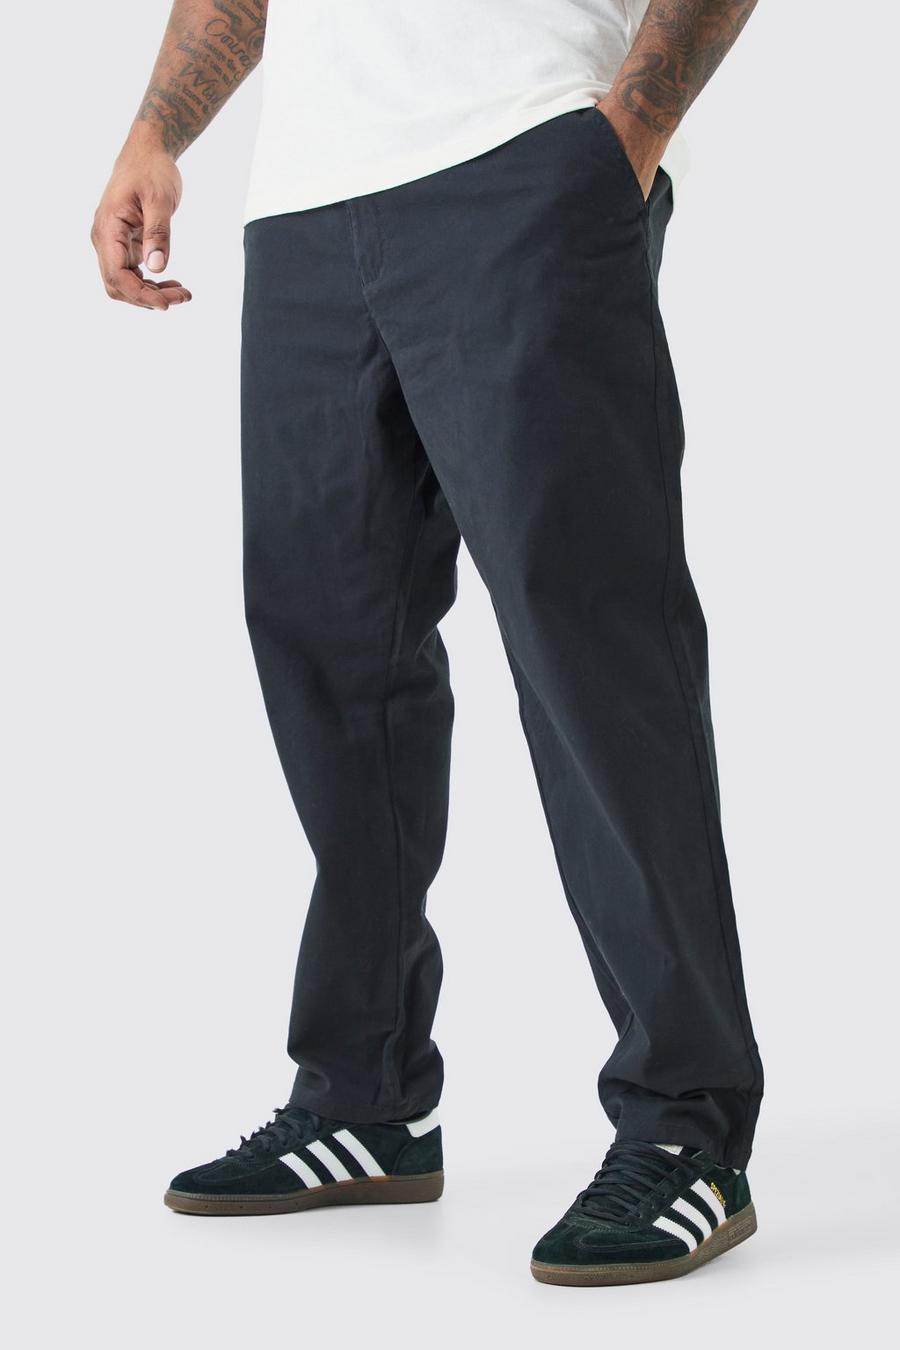 Pantaloni Chino Plus Size Slim Fit con vita fissa, Black